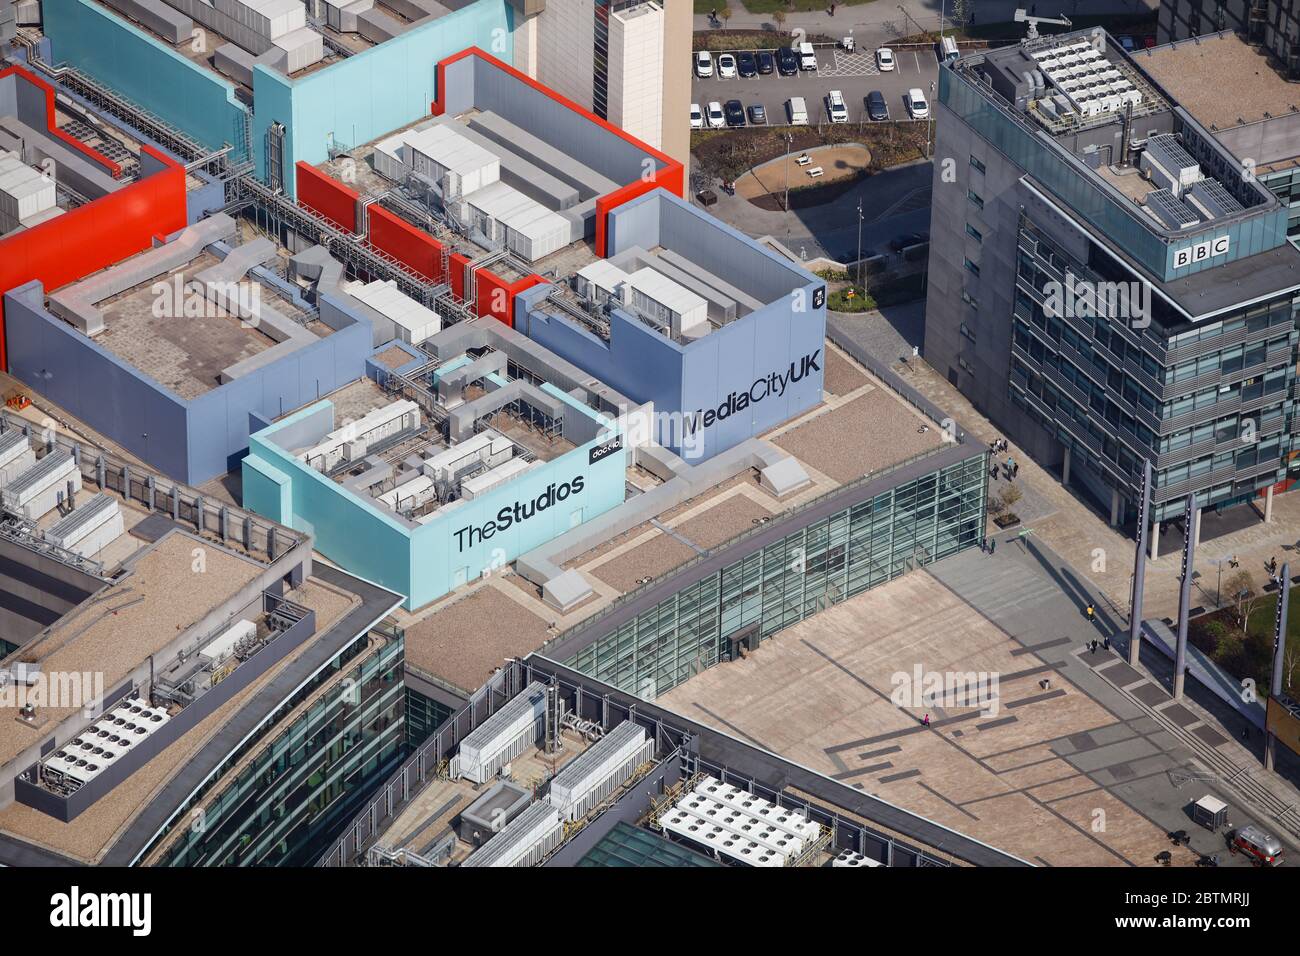 Vue aérienne de MediaCity Royaume-Uni à Salford, Manchester, Royaume-Uni Banque D'Images